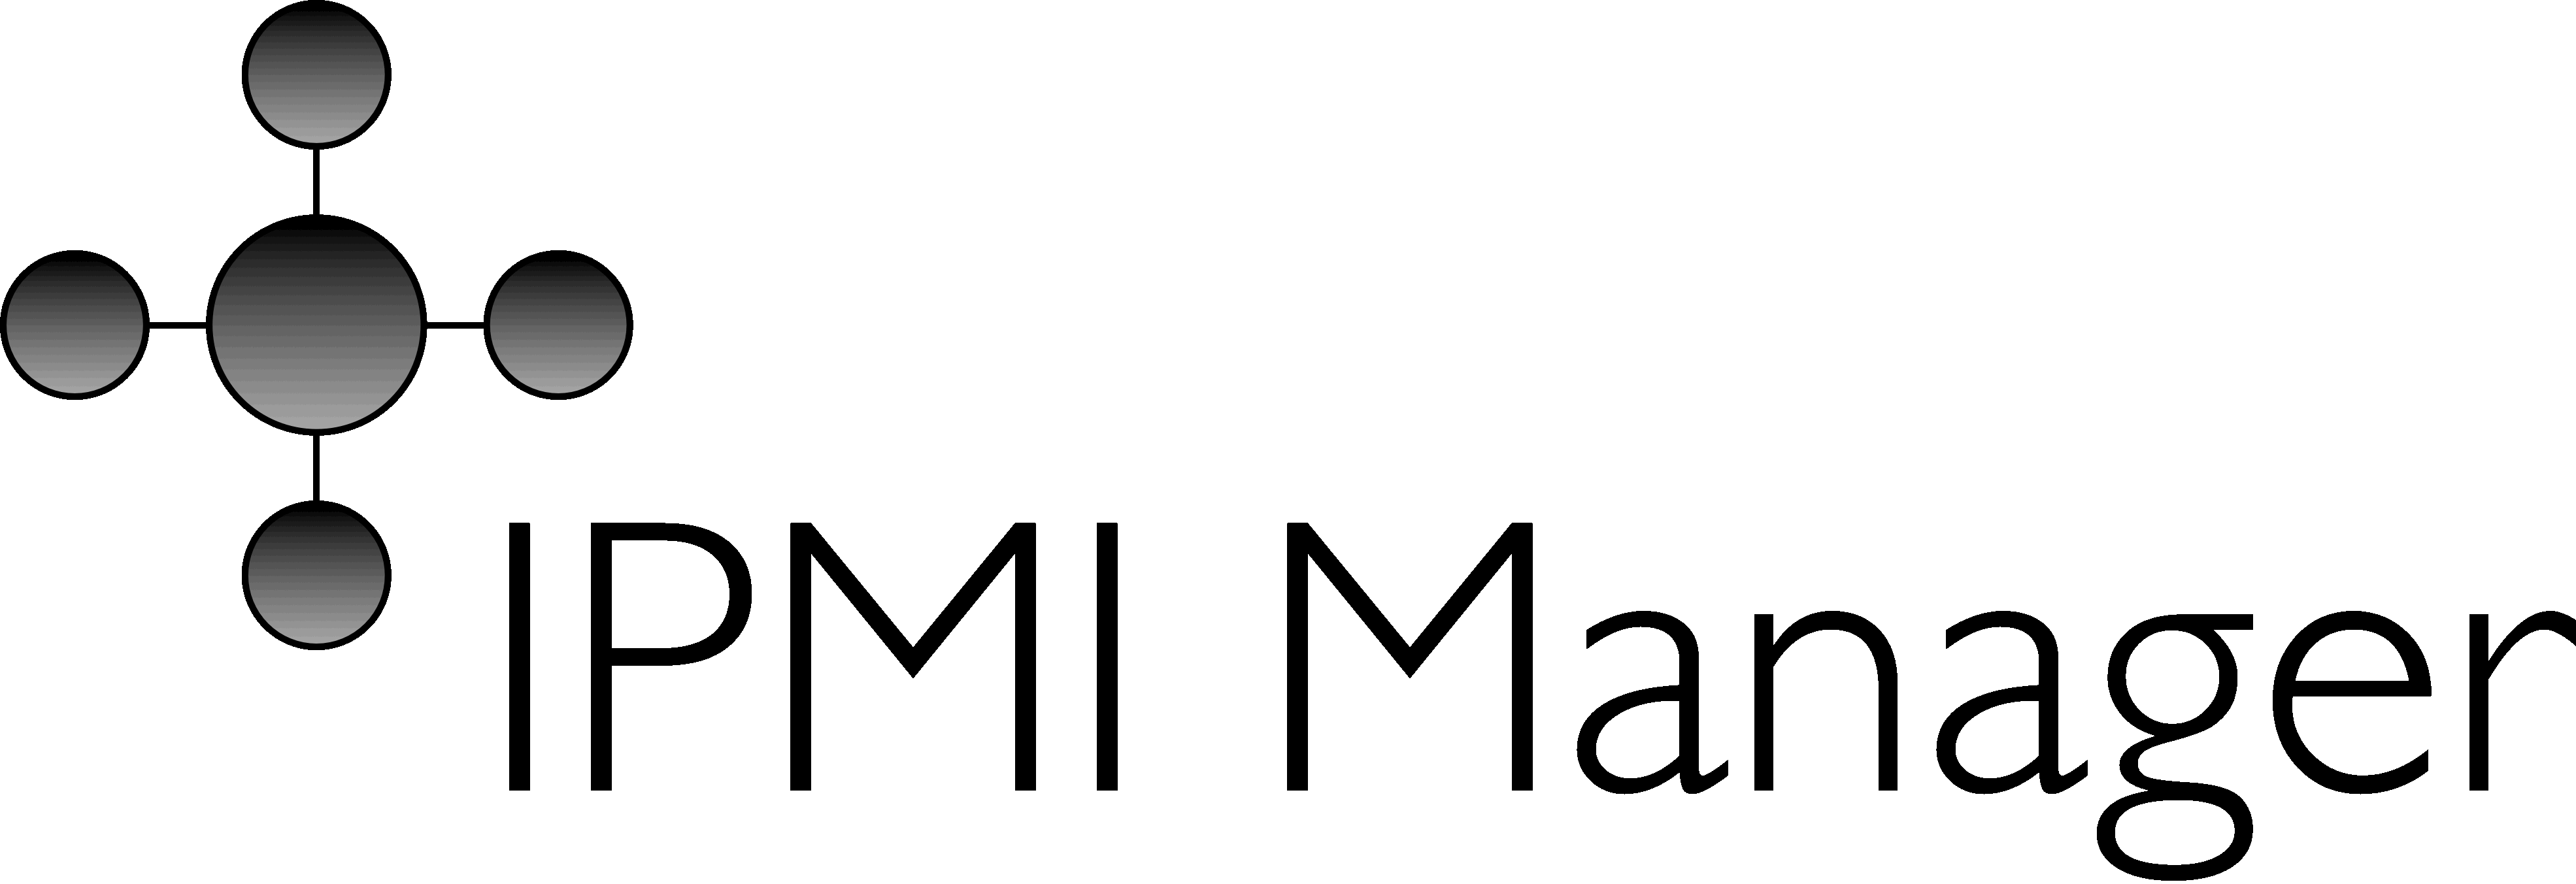 IPMI Logo - Contact